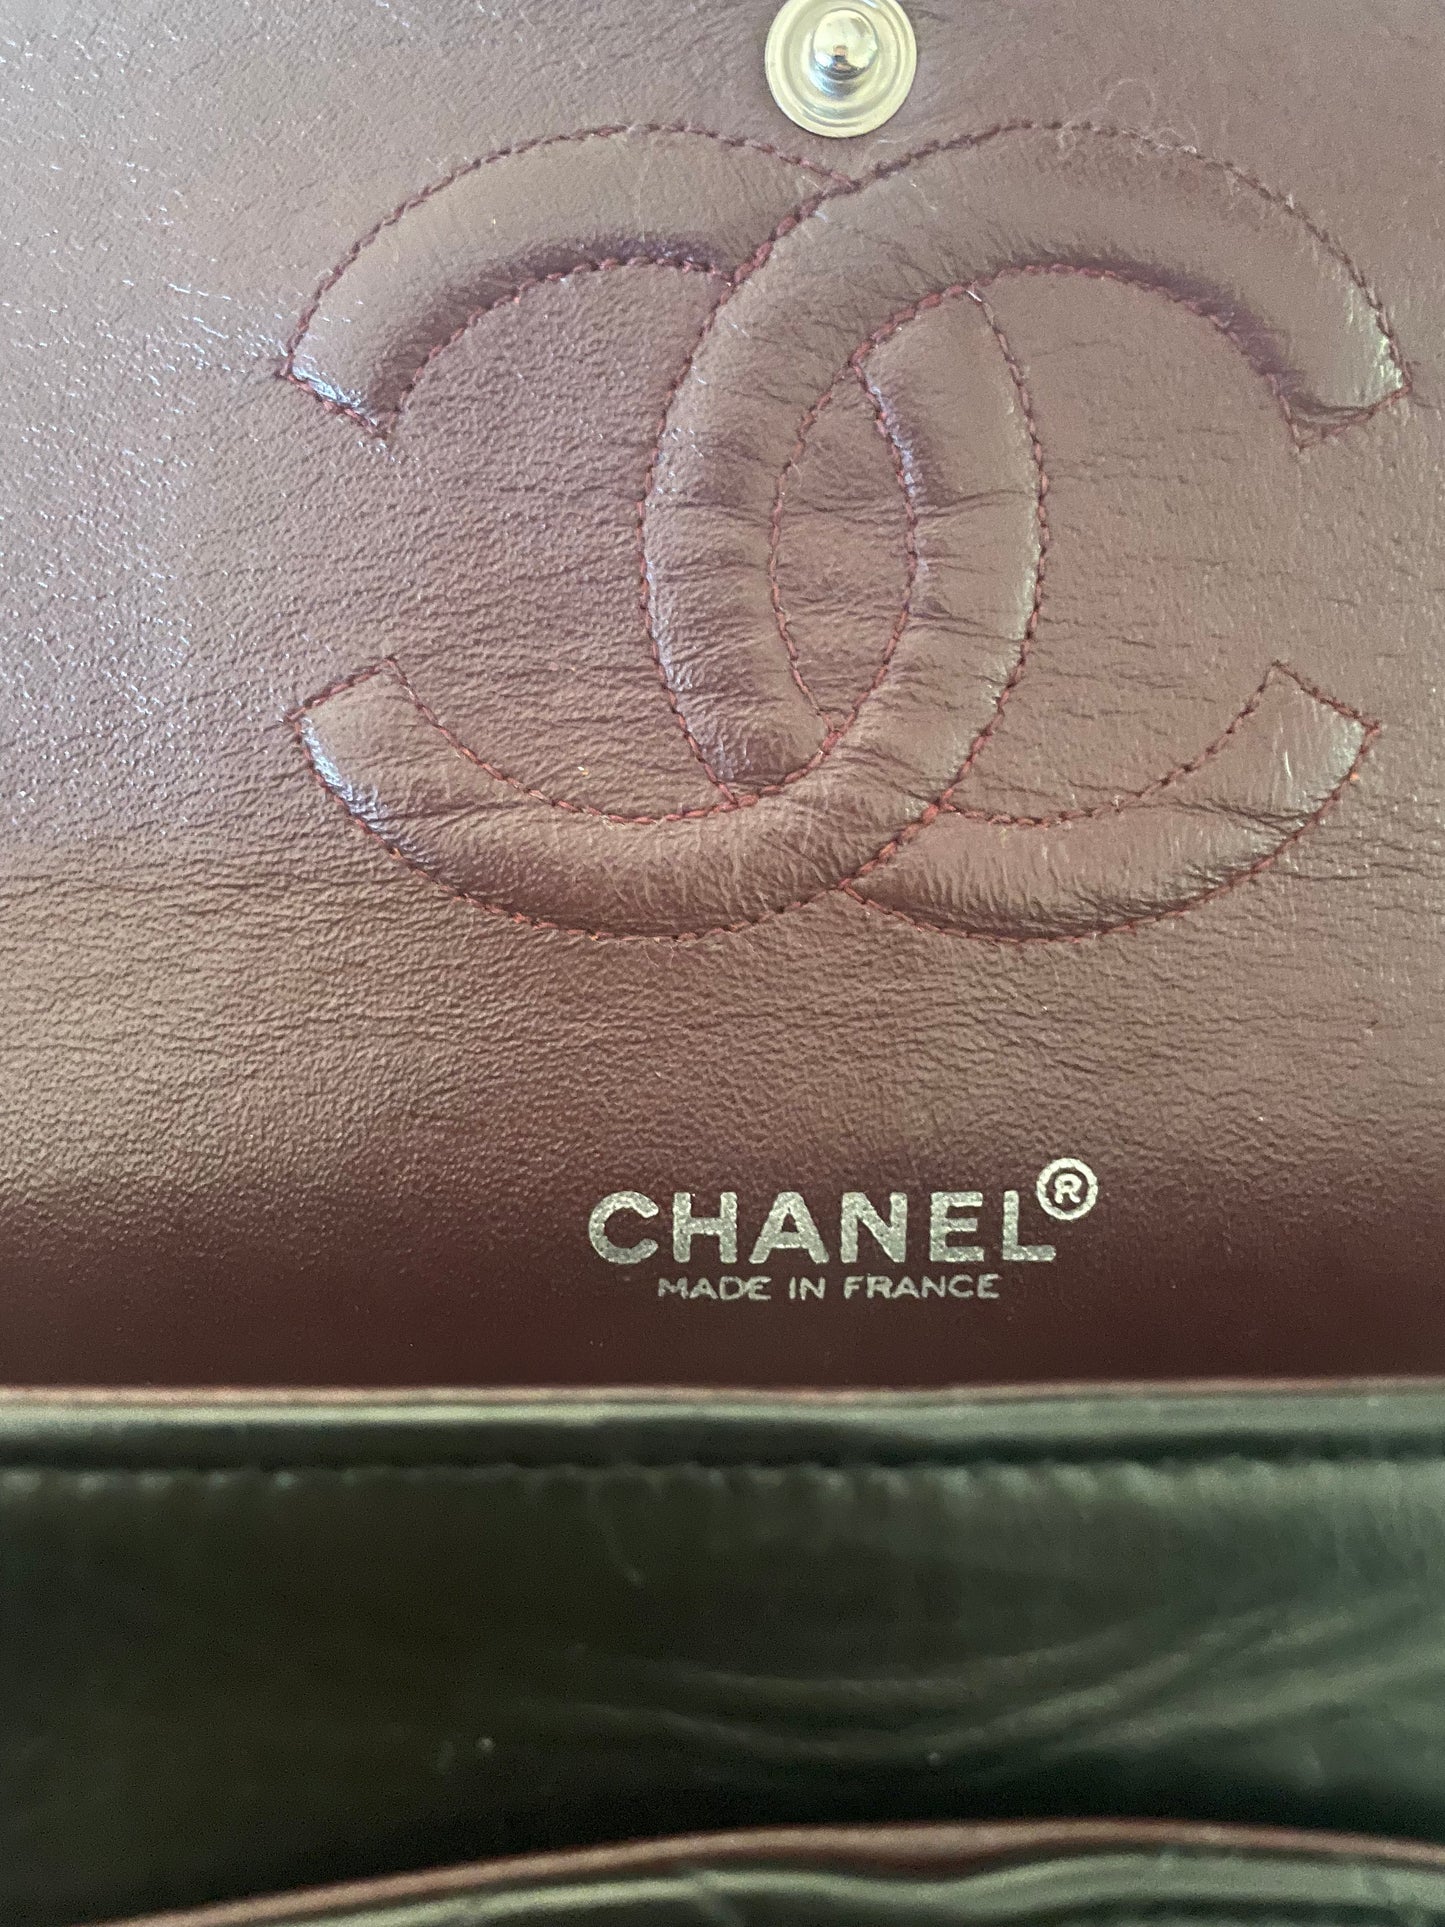 Sac à main Chanel Classique en cuir d'agneau noir et métal argenté.